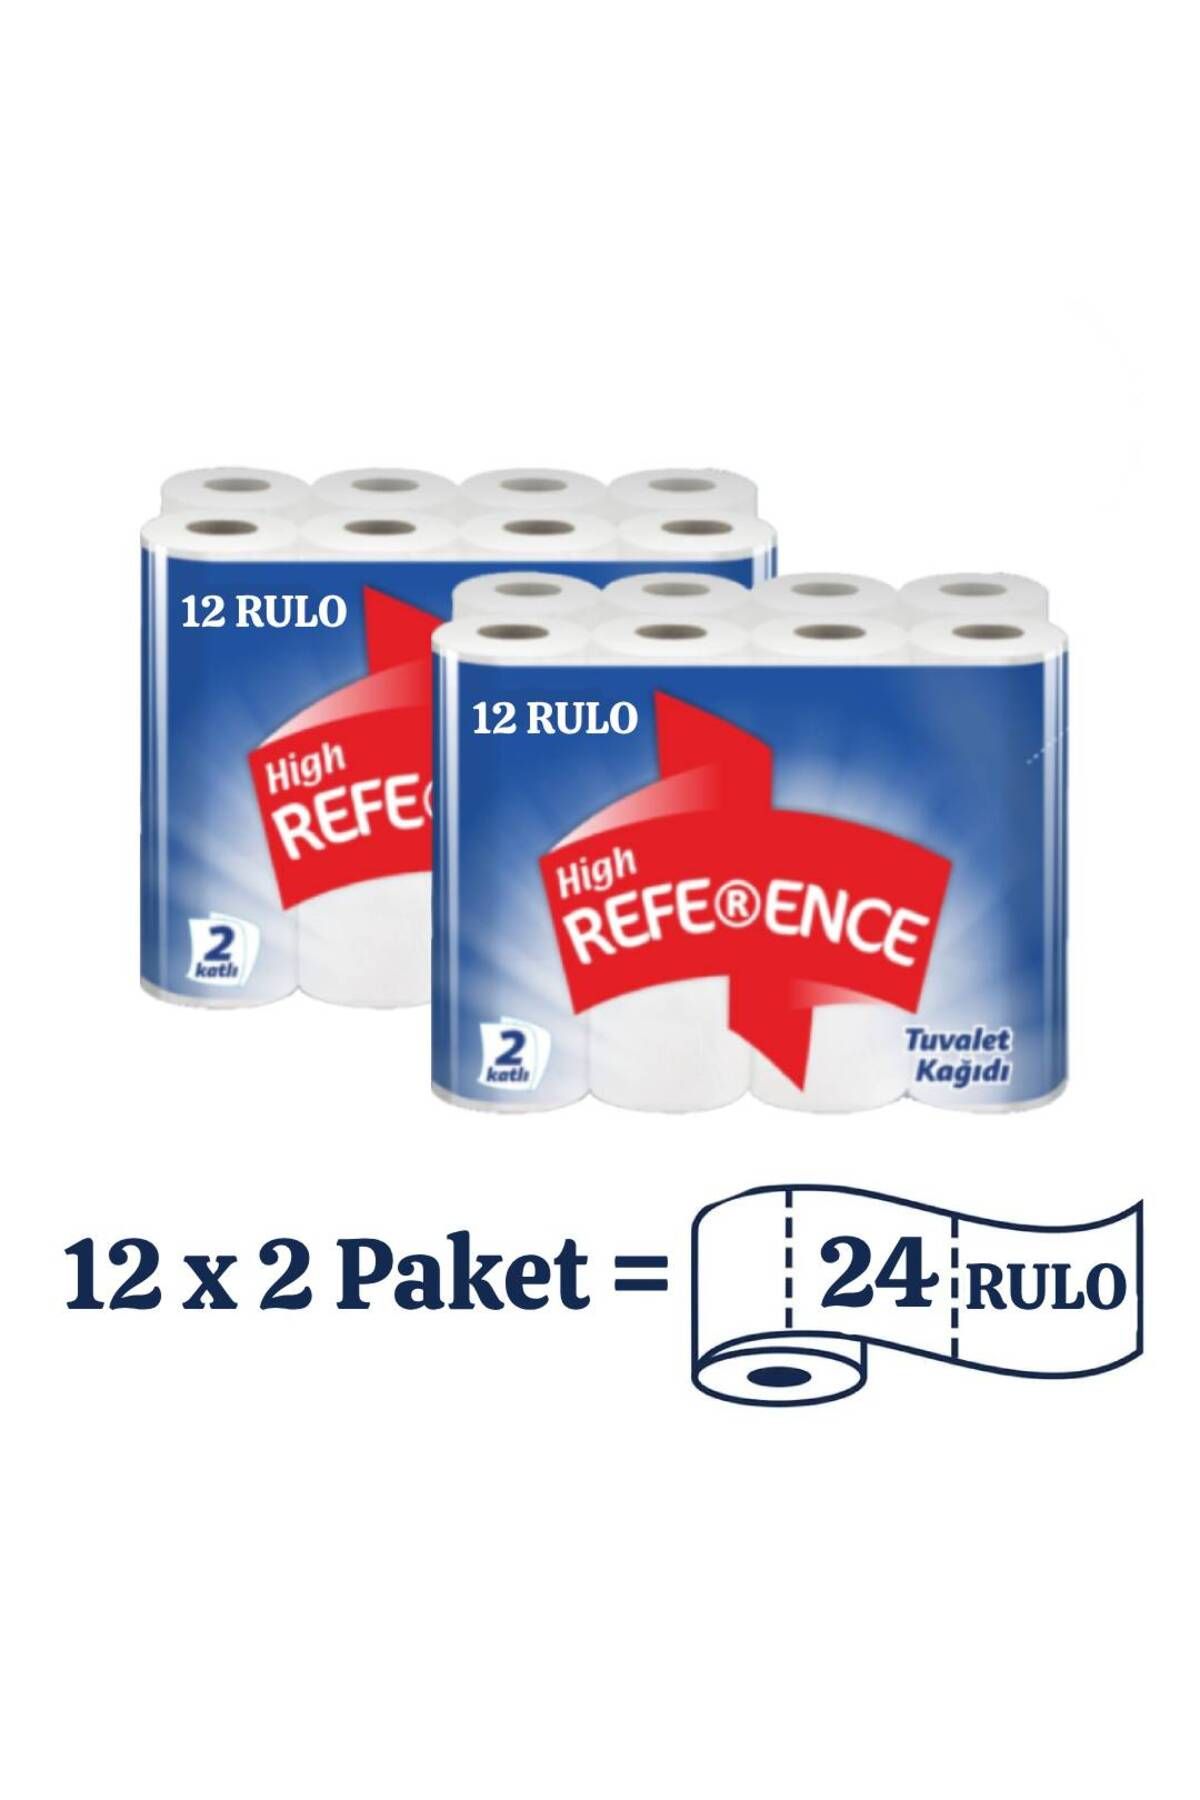 Reference Suya Ultra Dayanıklı Avantaj Paket Çift Katlı Tuvalet Kağıdı 12'li (2 Adet)